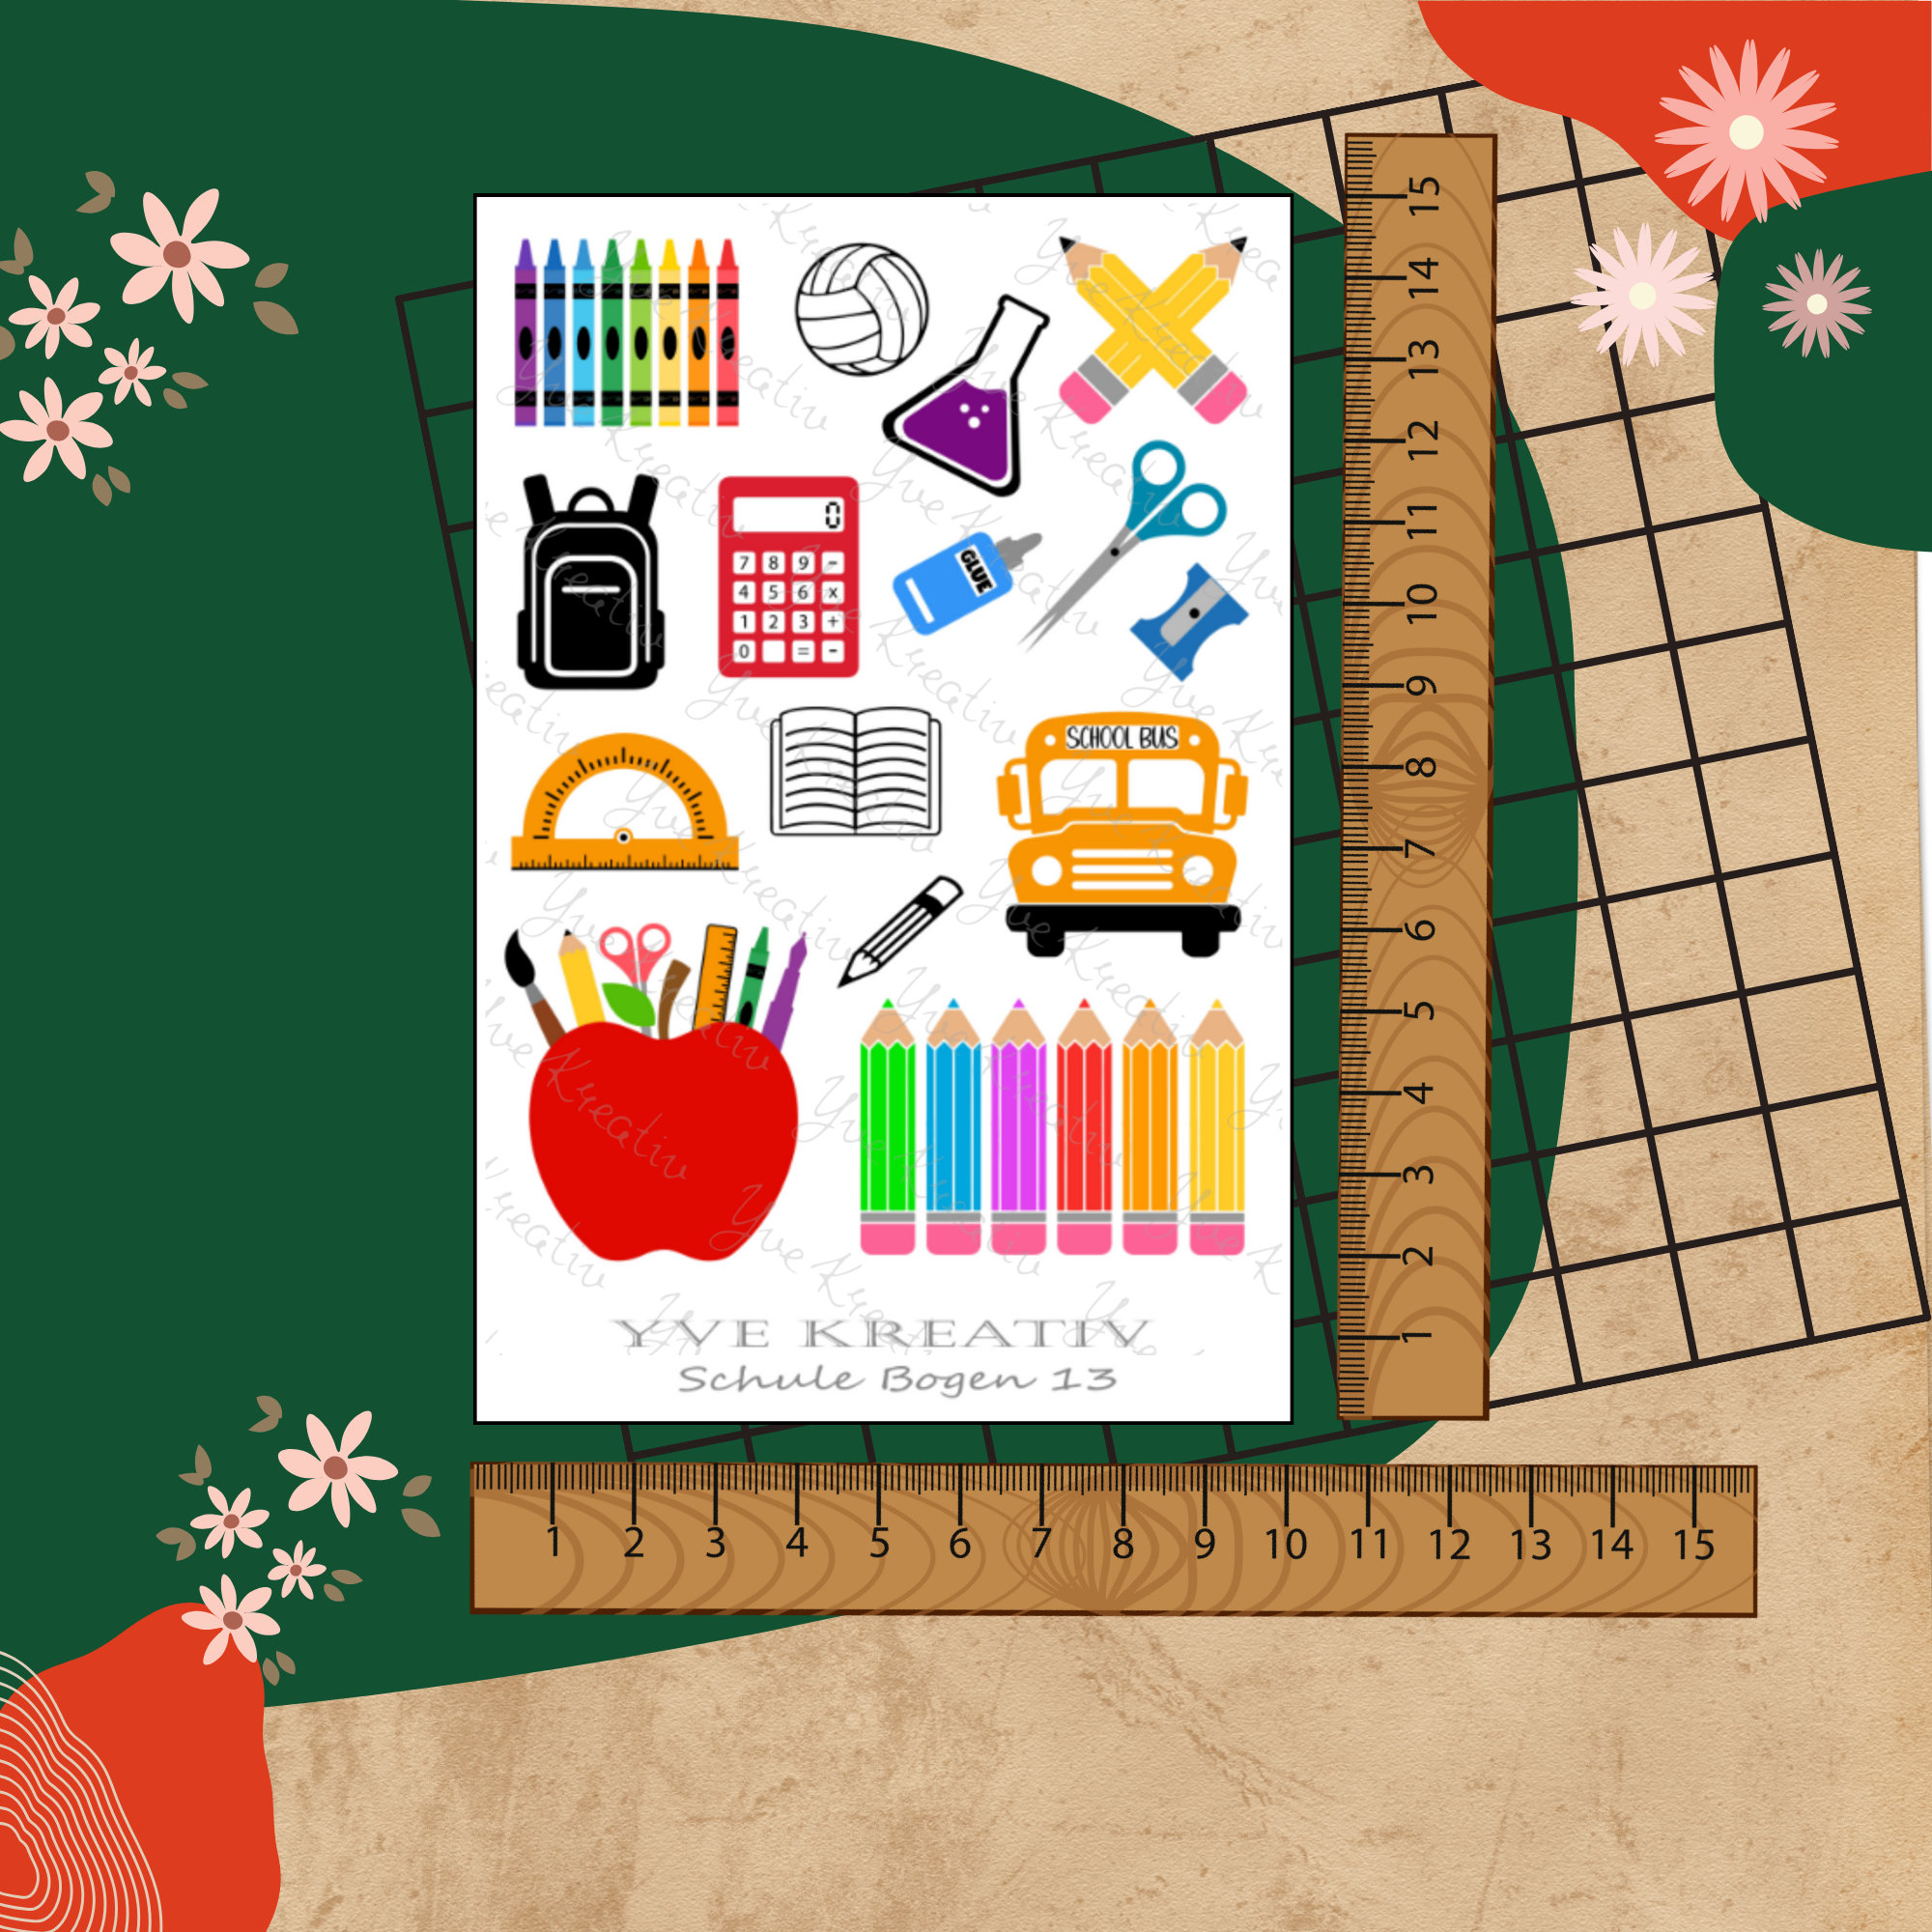 Sticker Bogen " Schule Einschulung " personalisierbar | Set - Aufkleber 3 Stickerbogen zur Auswahl in Weiß - Transparent - Matt - Glanz